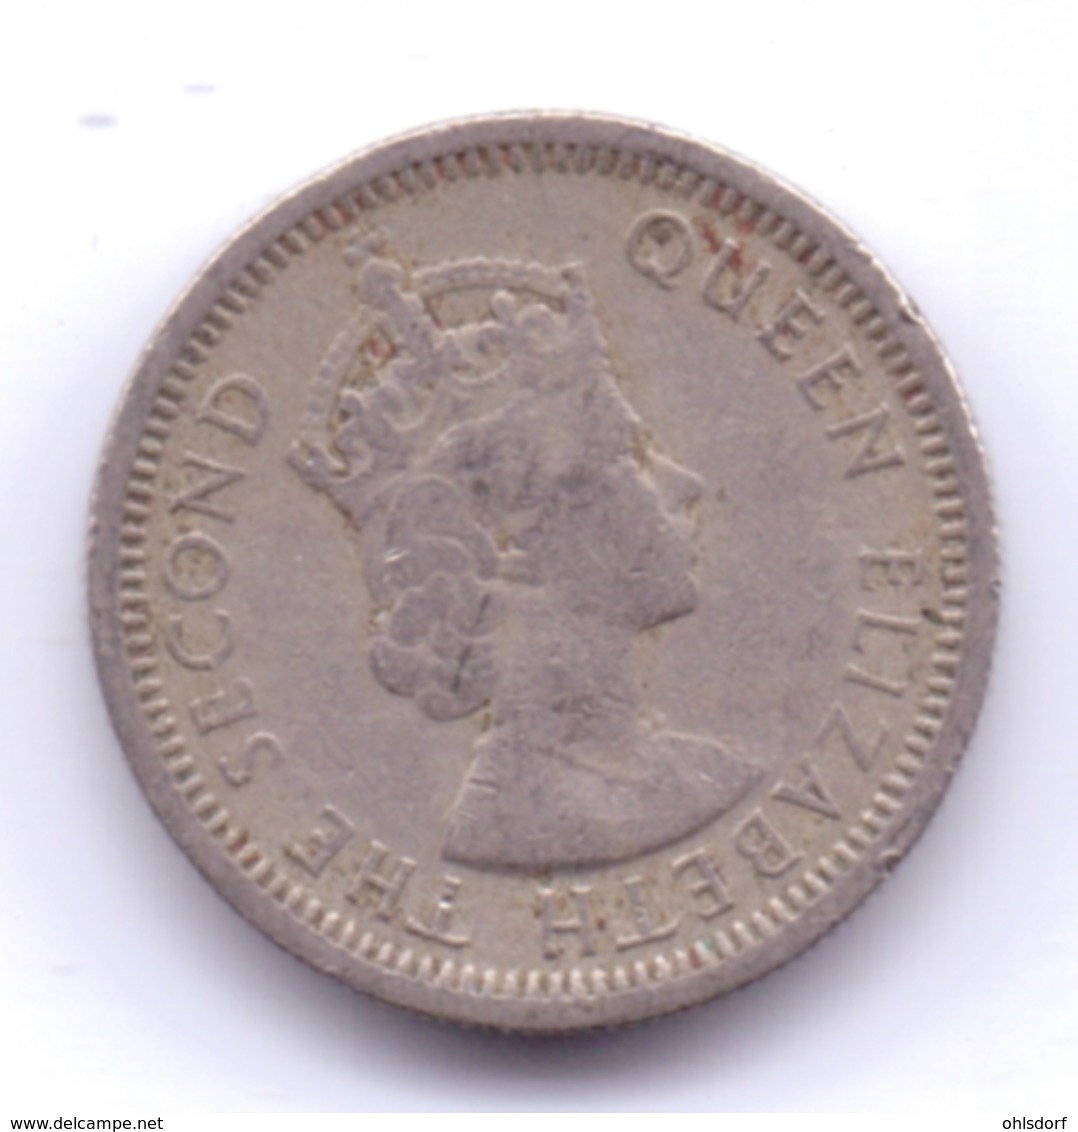 BRITISH CARIBBEAN TERRITORIES 1956: 10 Cents, KM 5 - Caraibi Britannici (Territori)